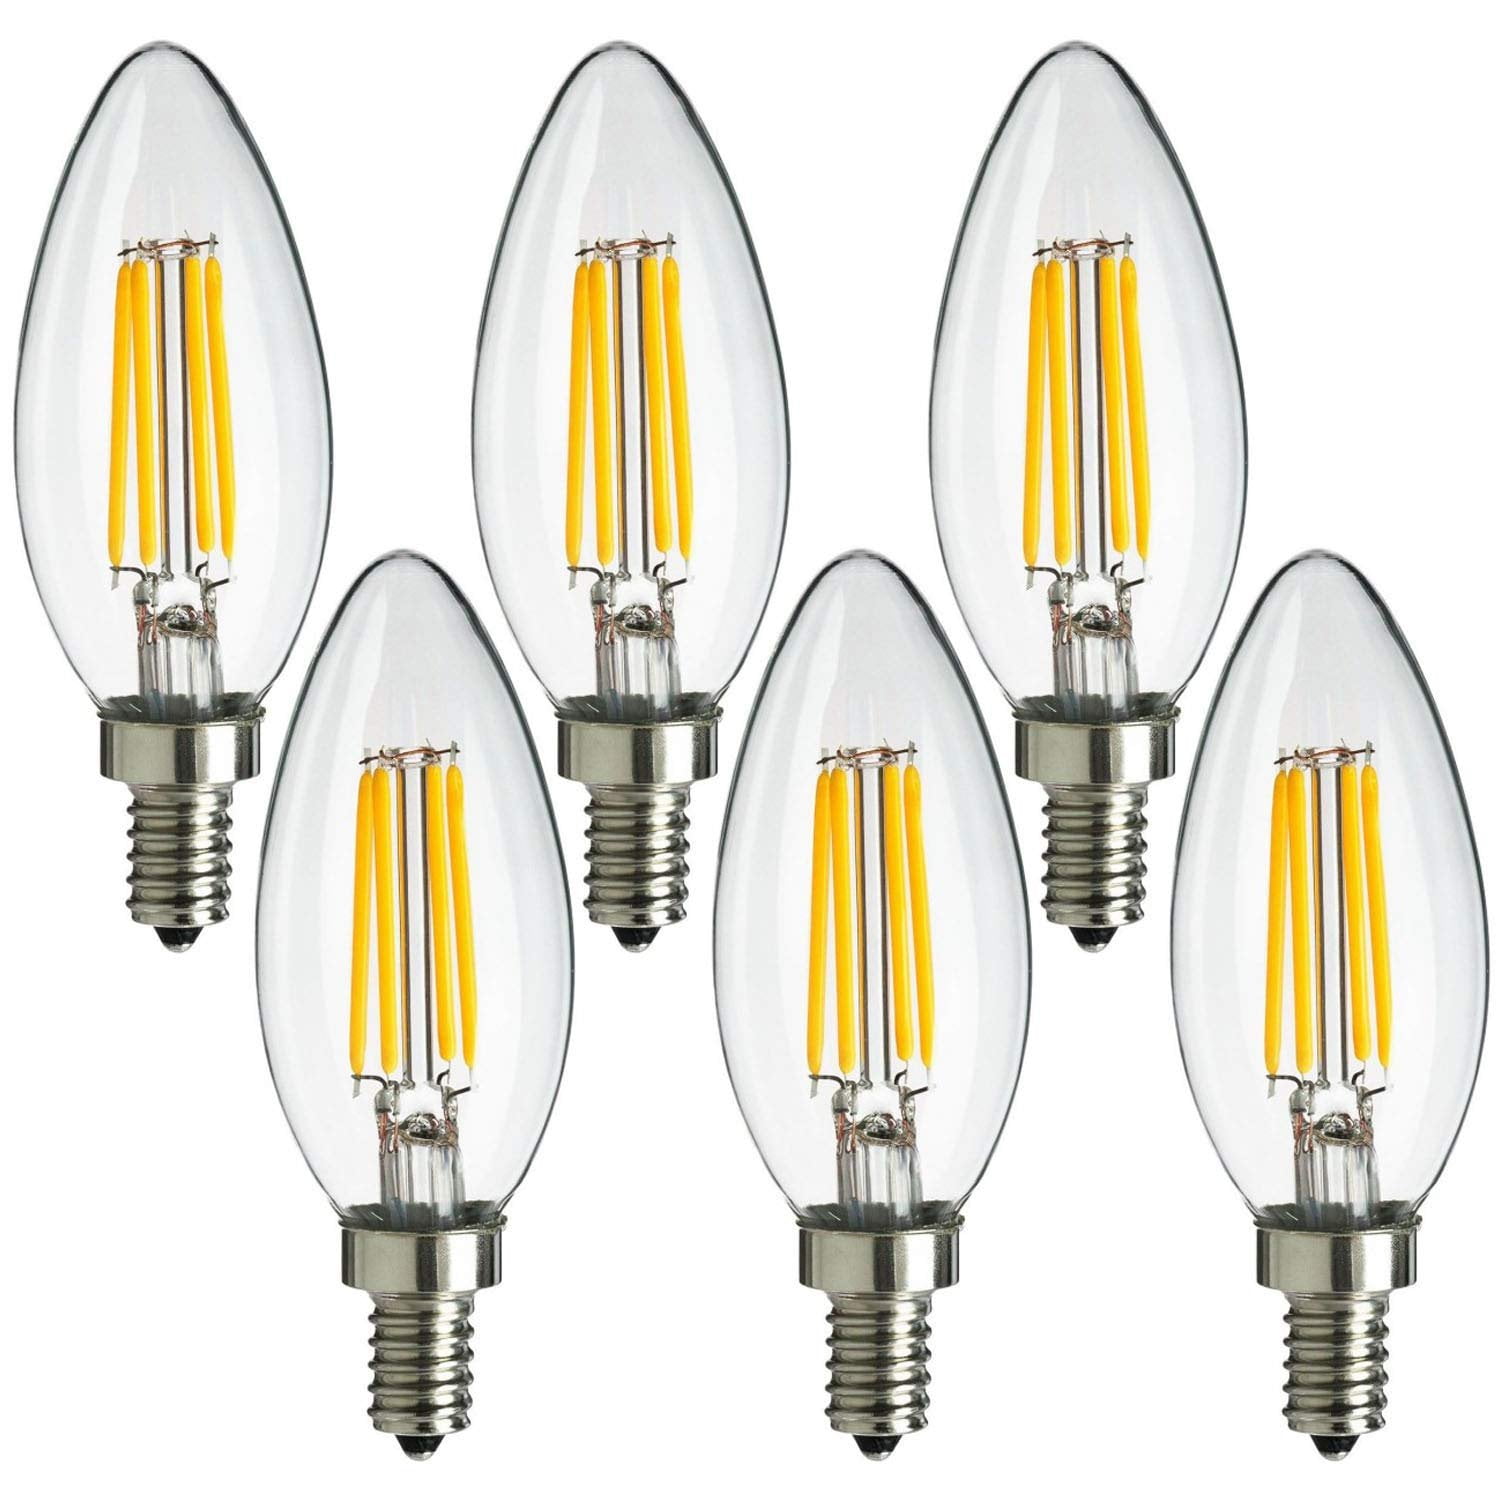 LED Candelabra Light Bulb Dimmable 40W E26 Base Filament Edison 6-Pack 